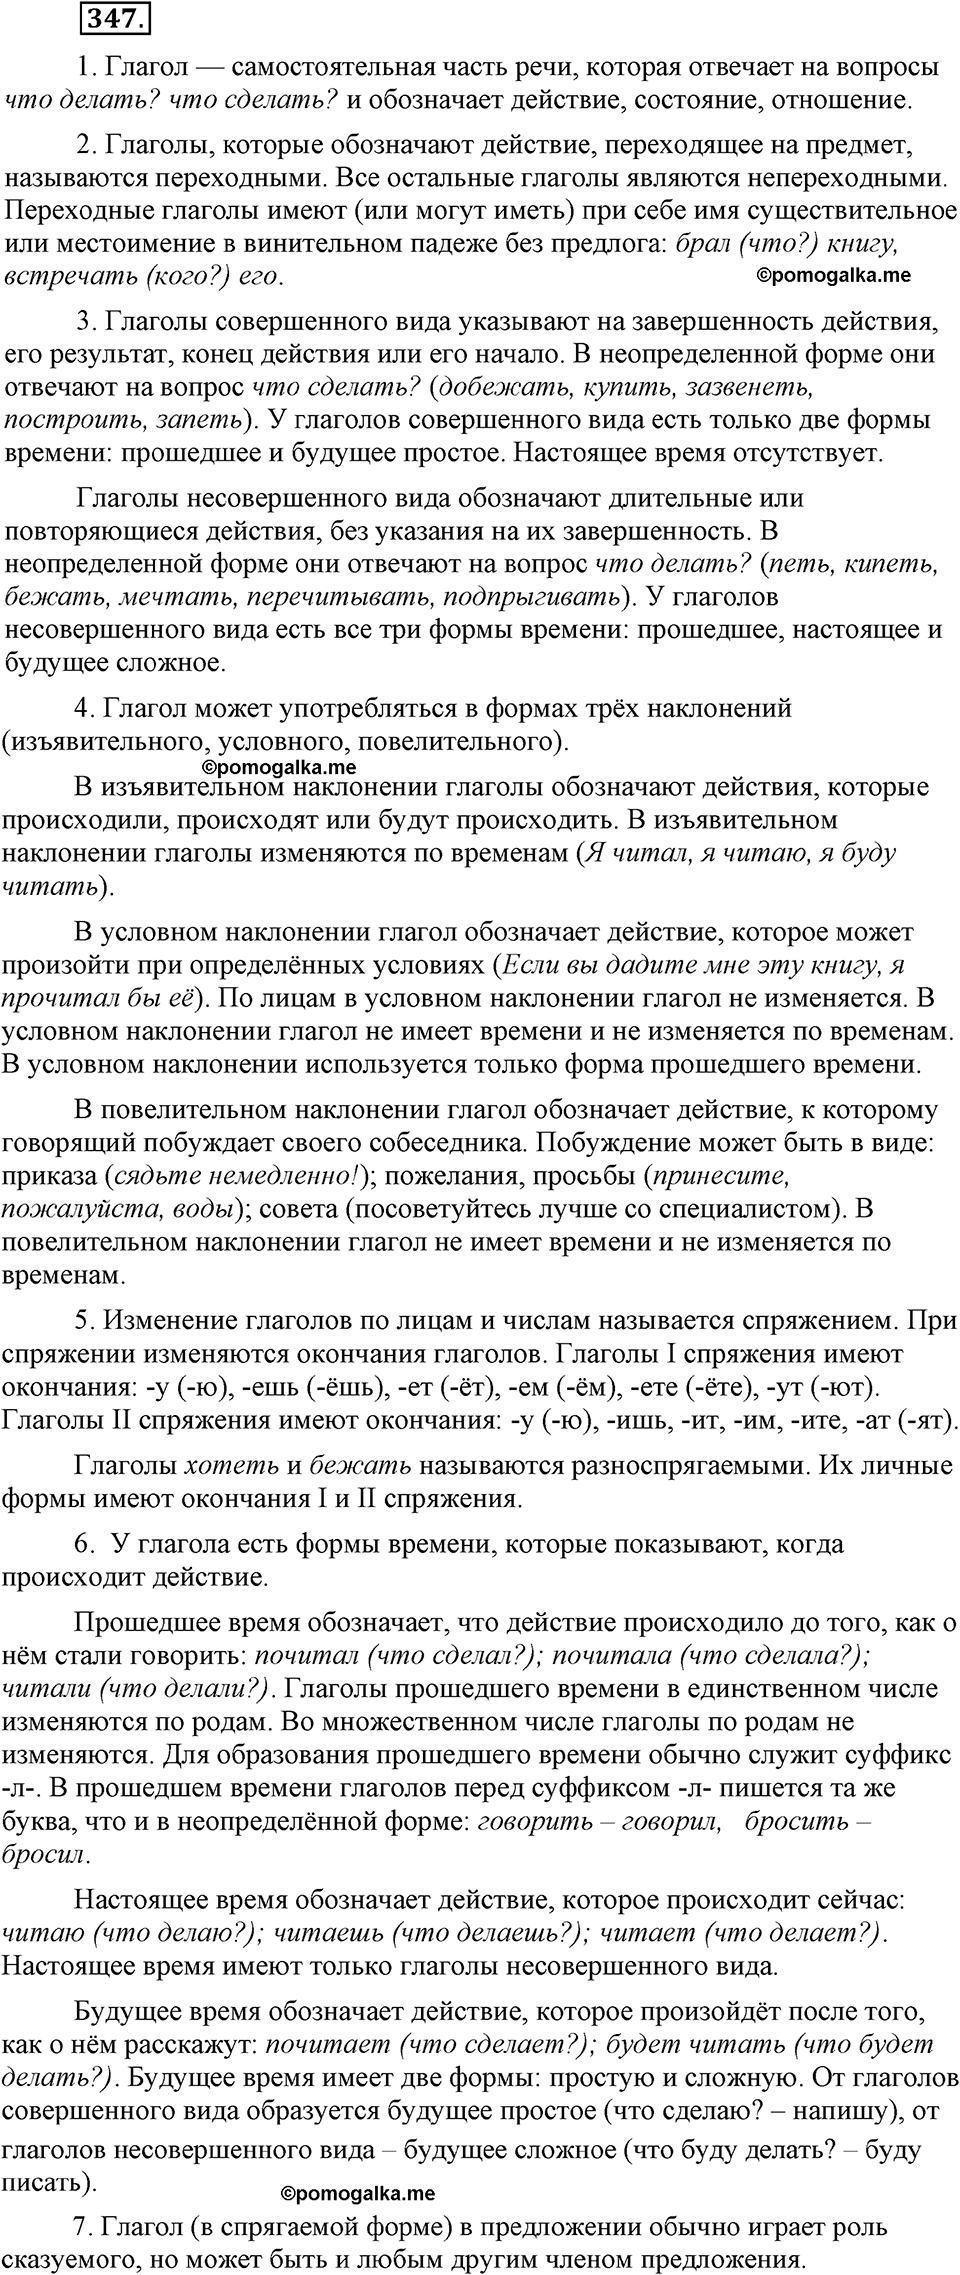 страница 159 номер 347 русский язык 9 класс Бархударов 2011 год